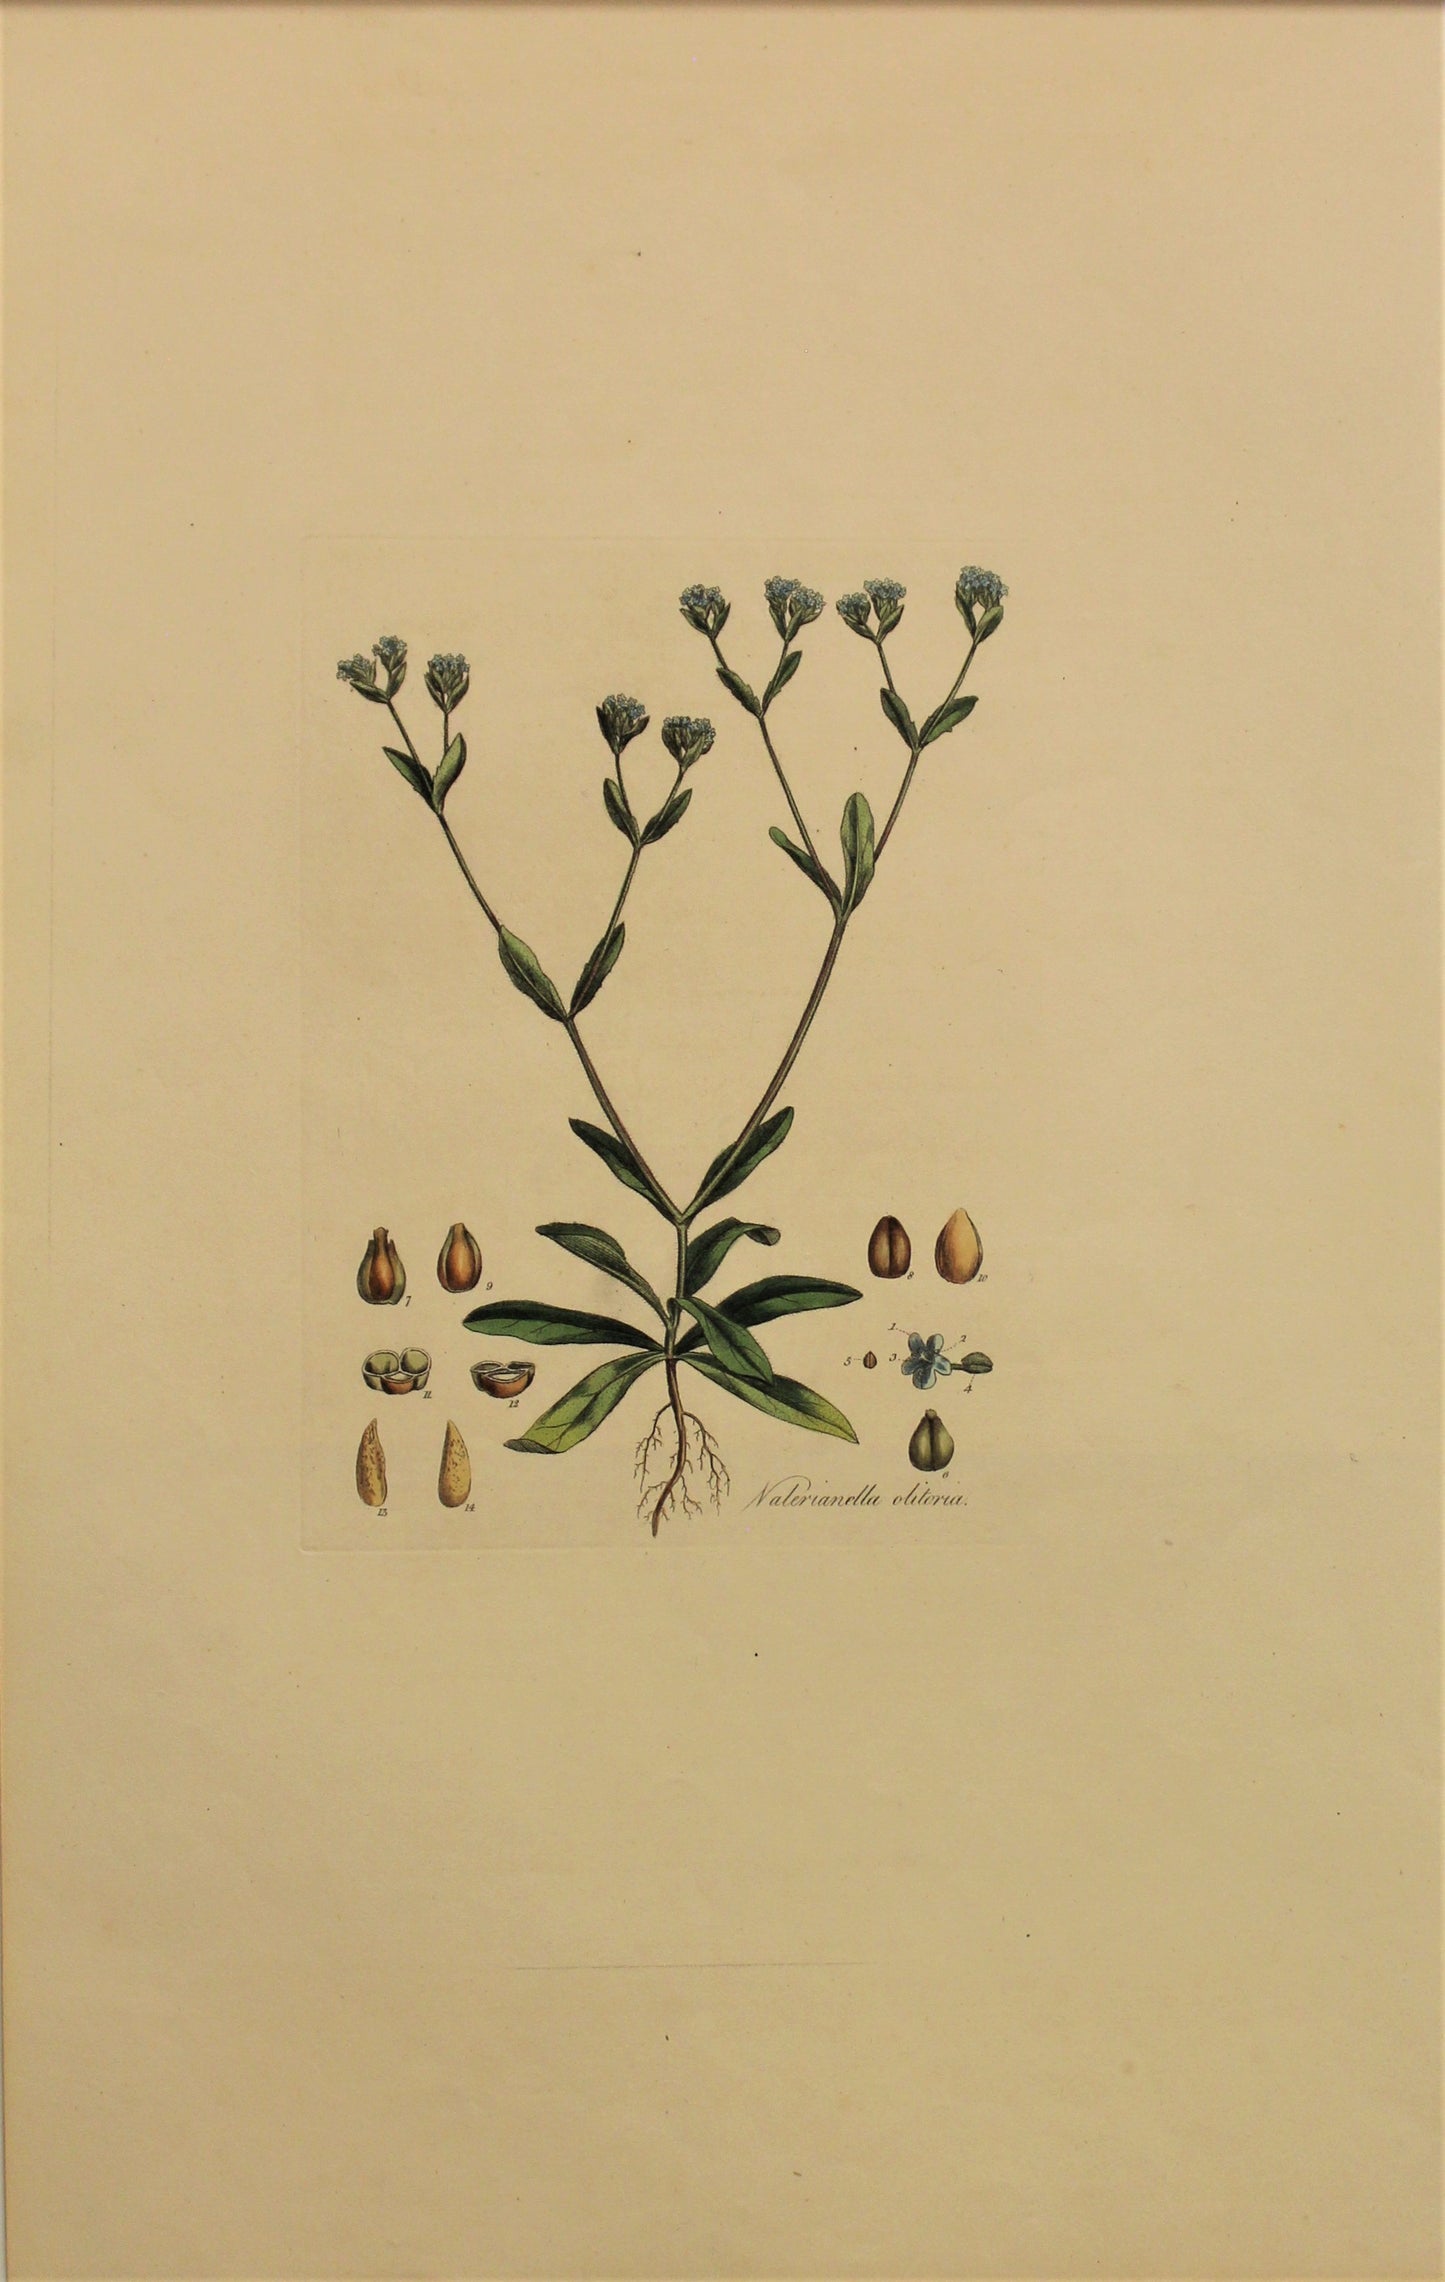 Botanical, Curtis William, Nalerianella Olitoria, Flora Londinensis, c1817